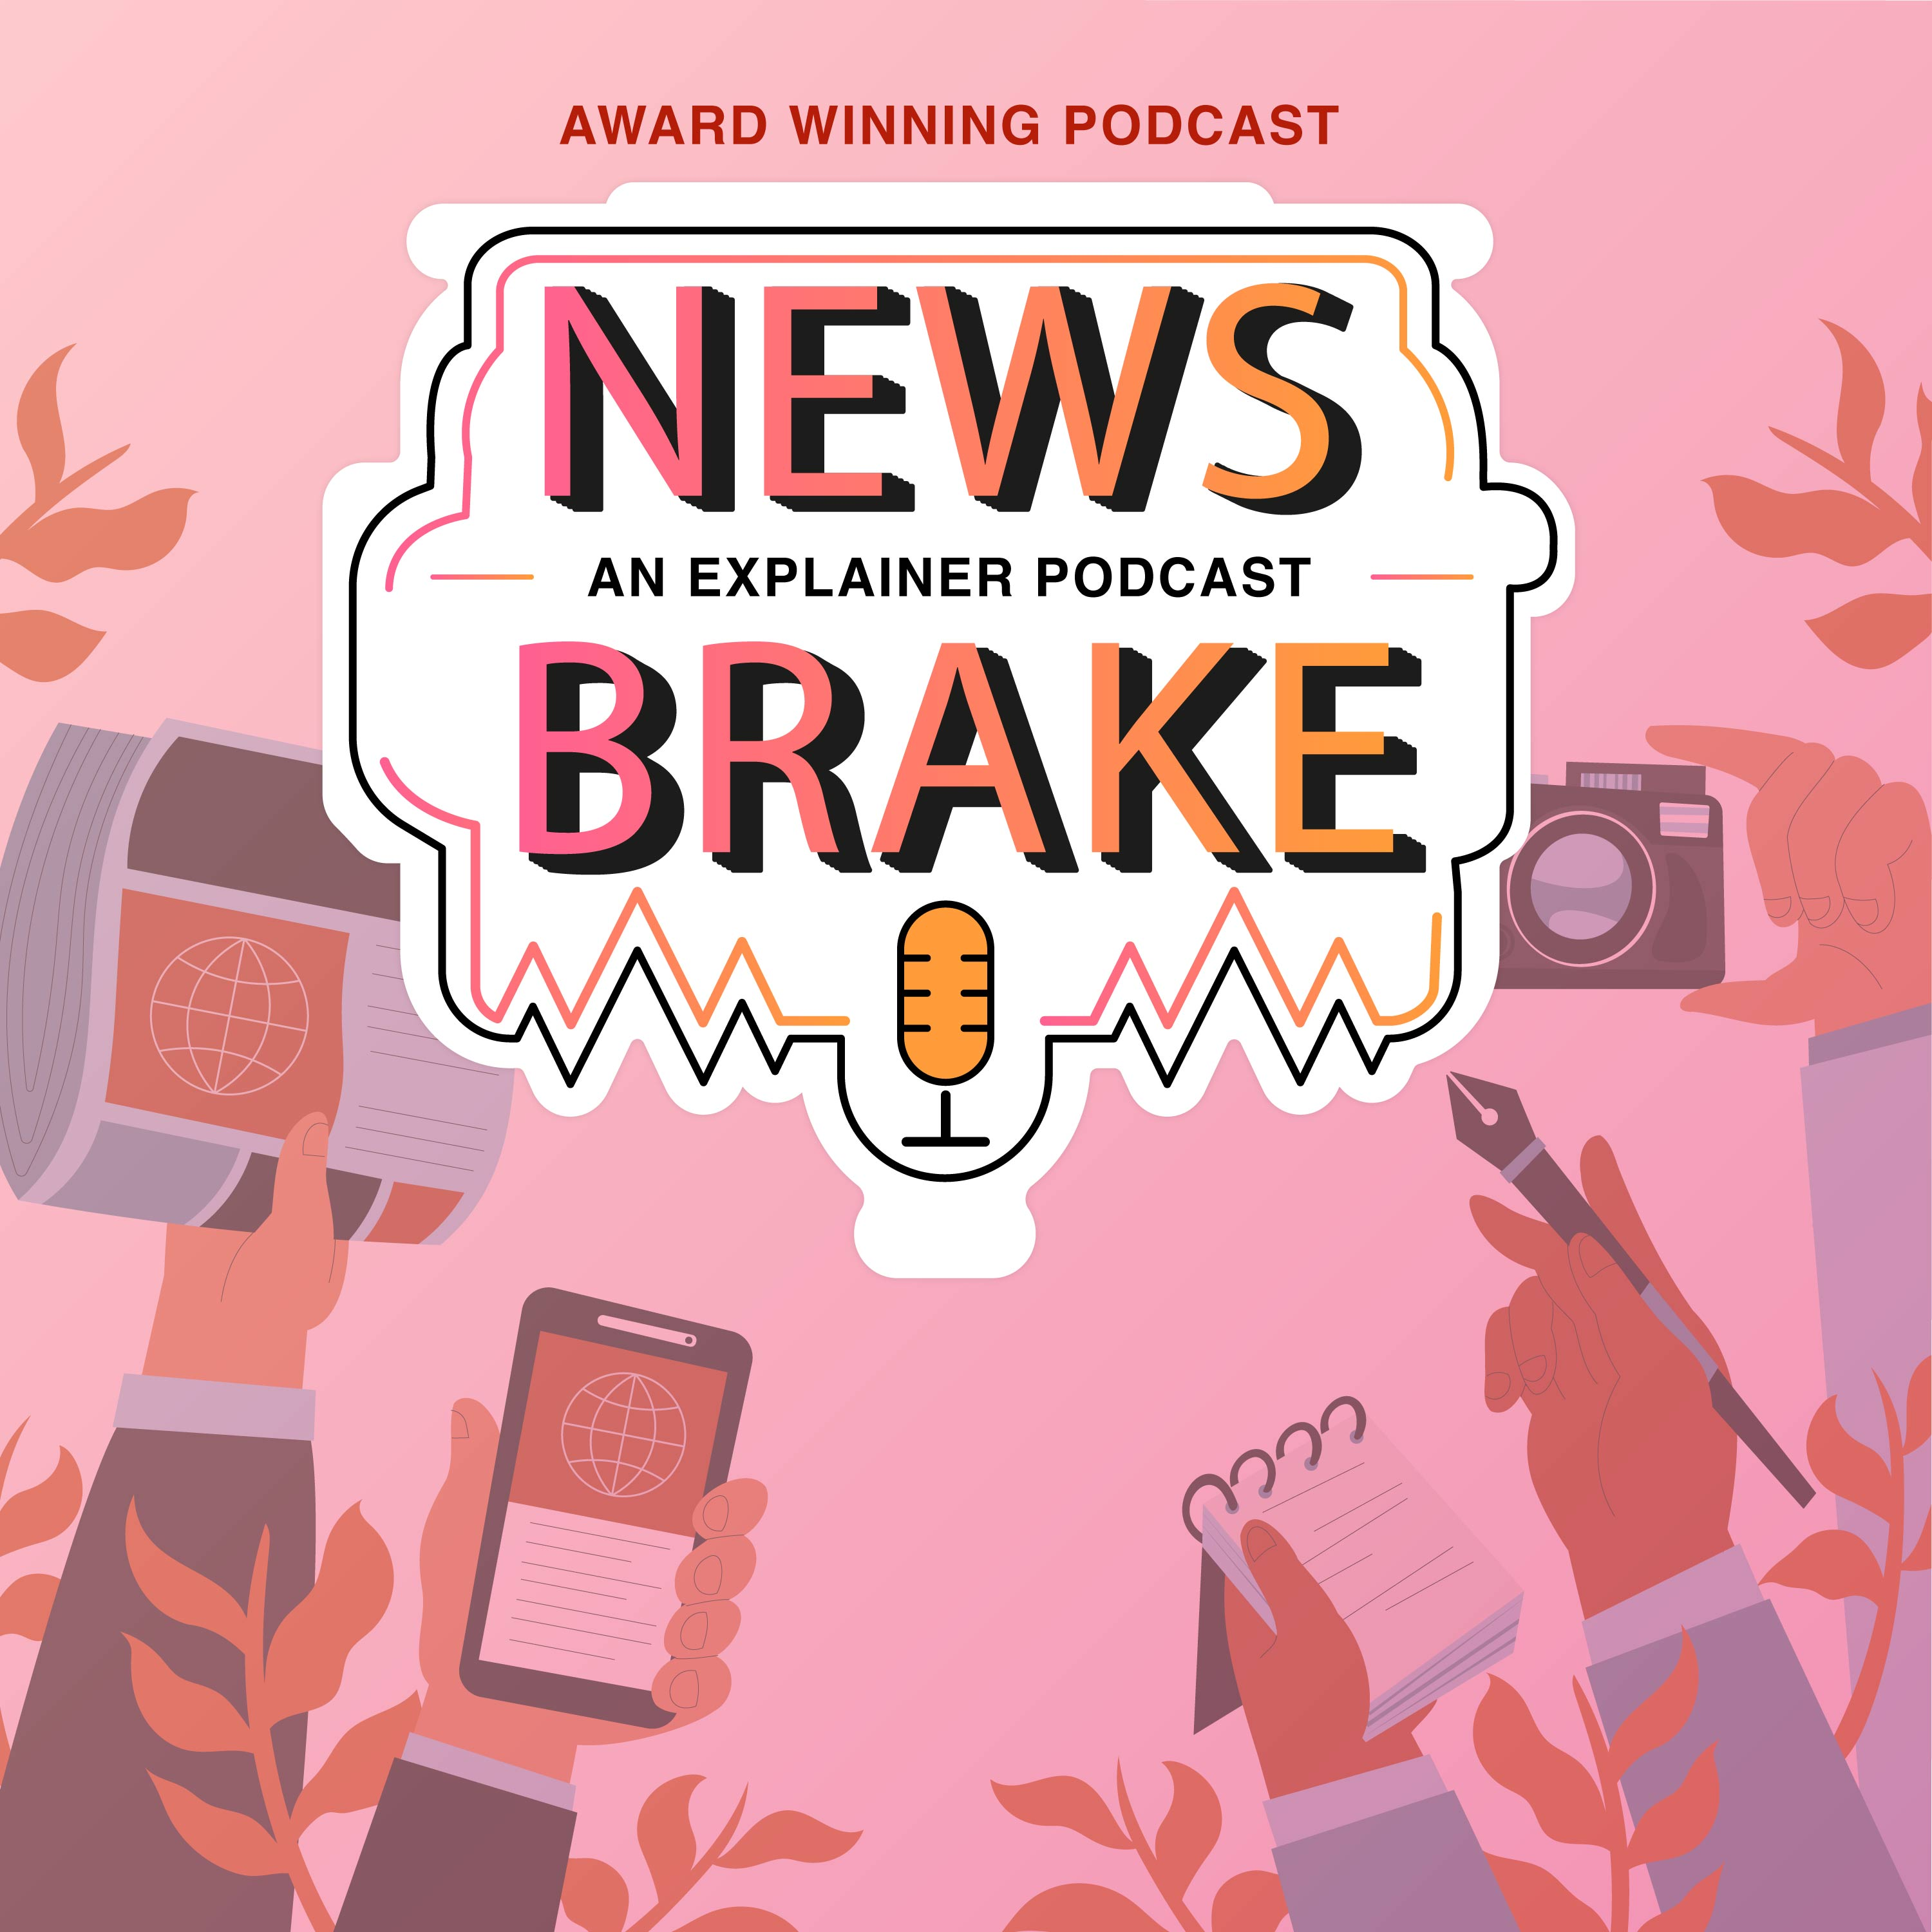 News Brake- An Explainer Podcast